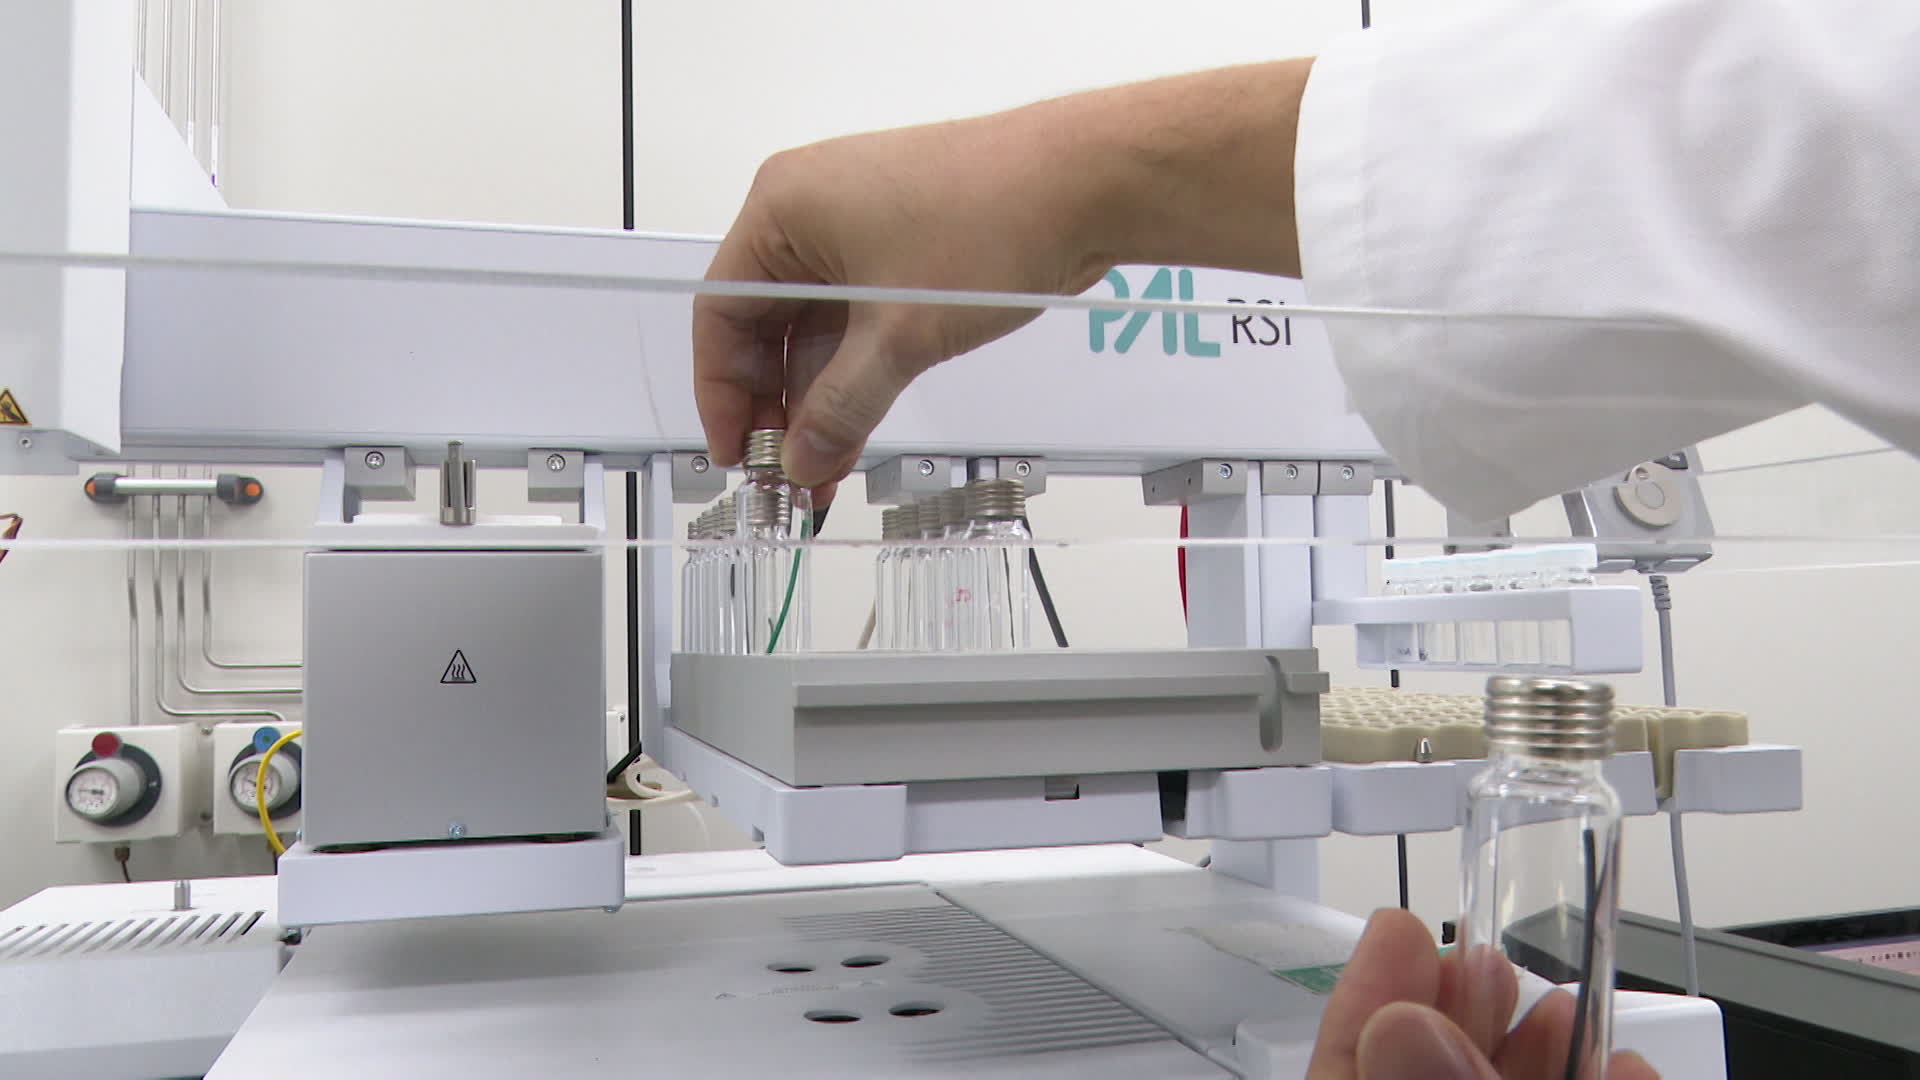 한국산업안전보건연구원이 3D프린팅 소재 성분 분석 실험을 진행하고 있다.(출처: 생로병사의 비밀)